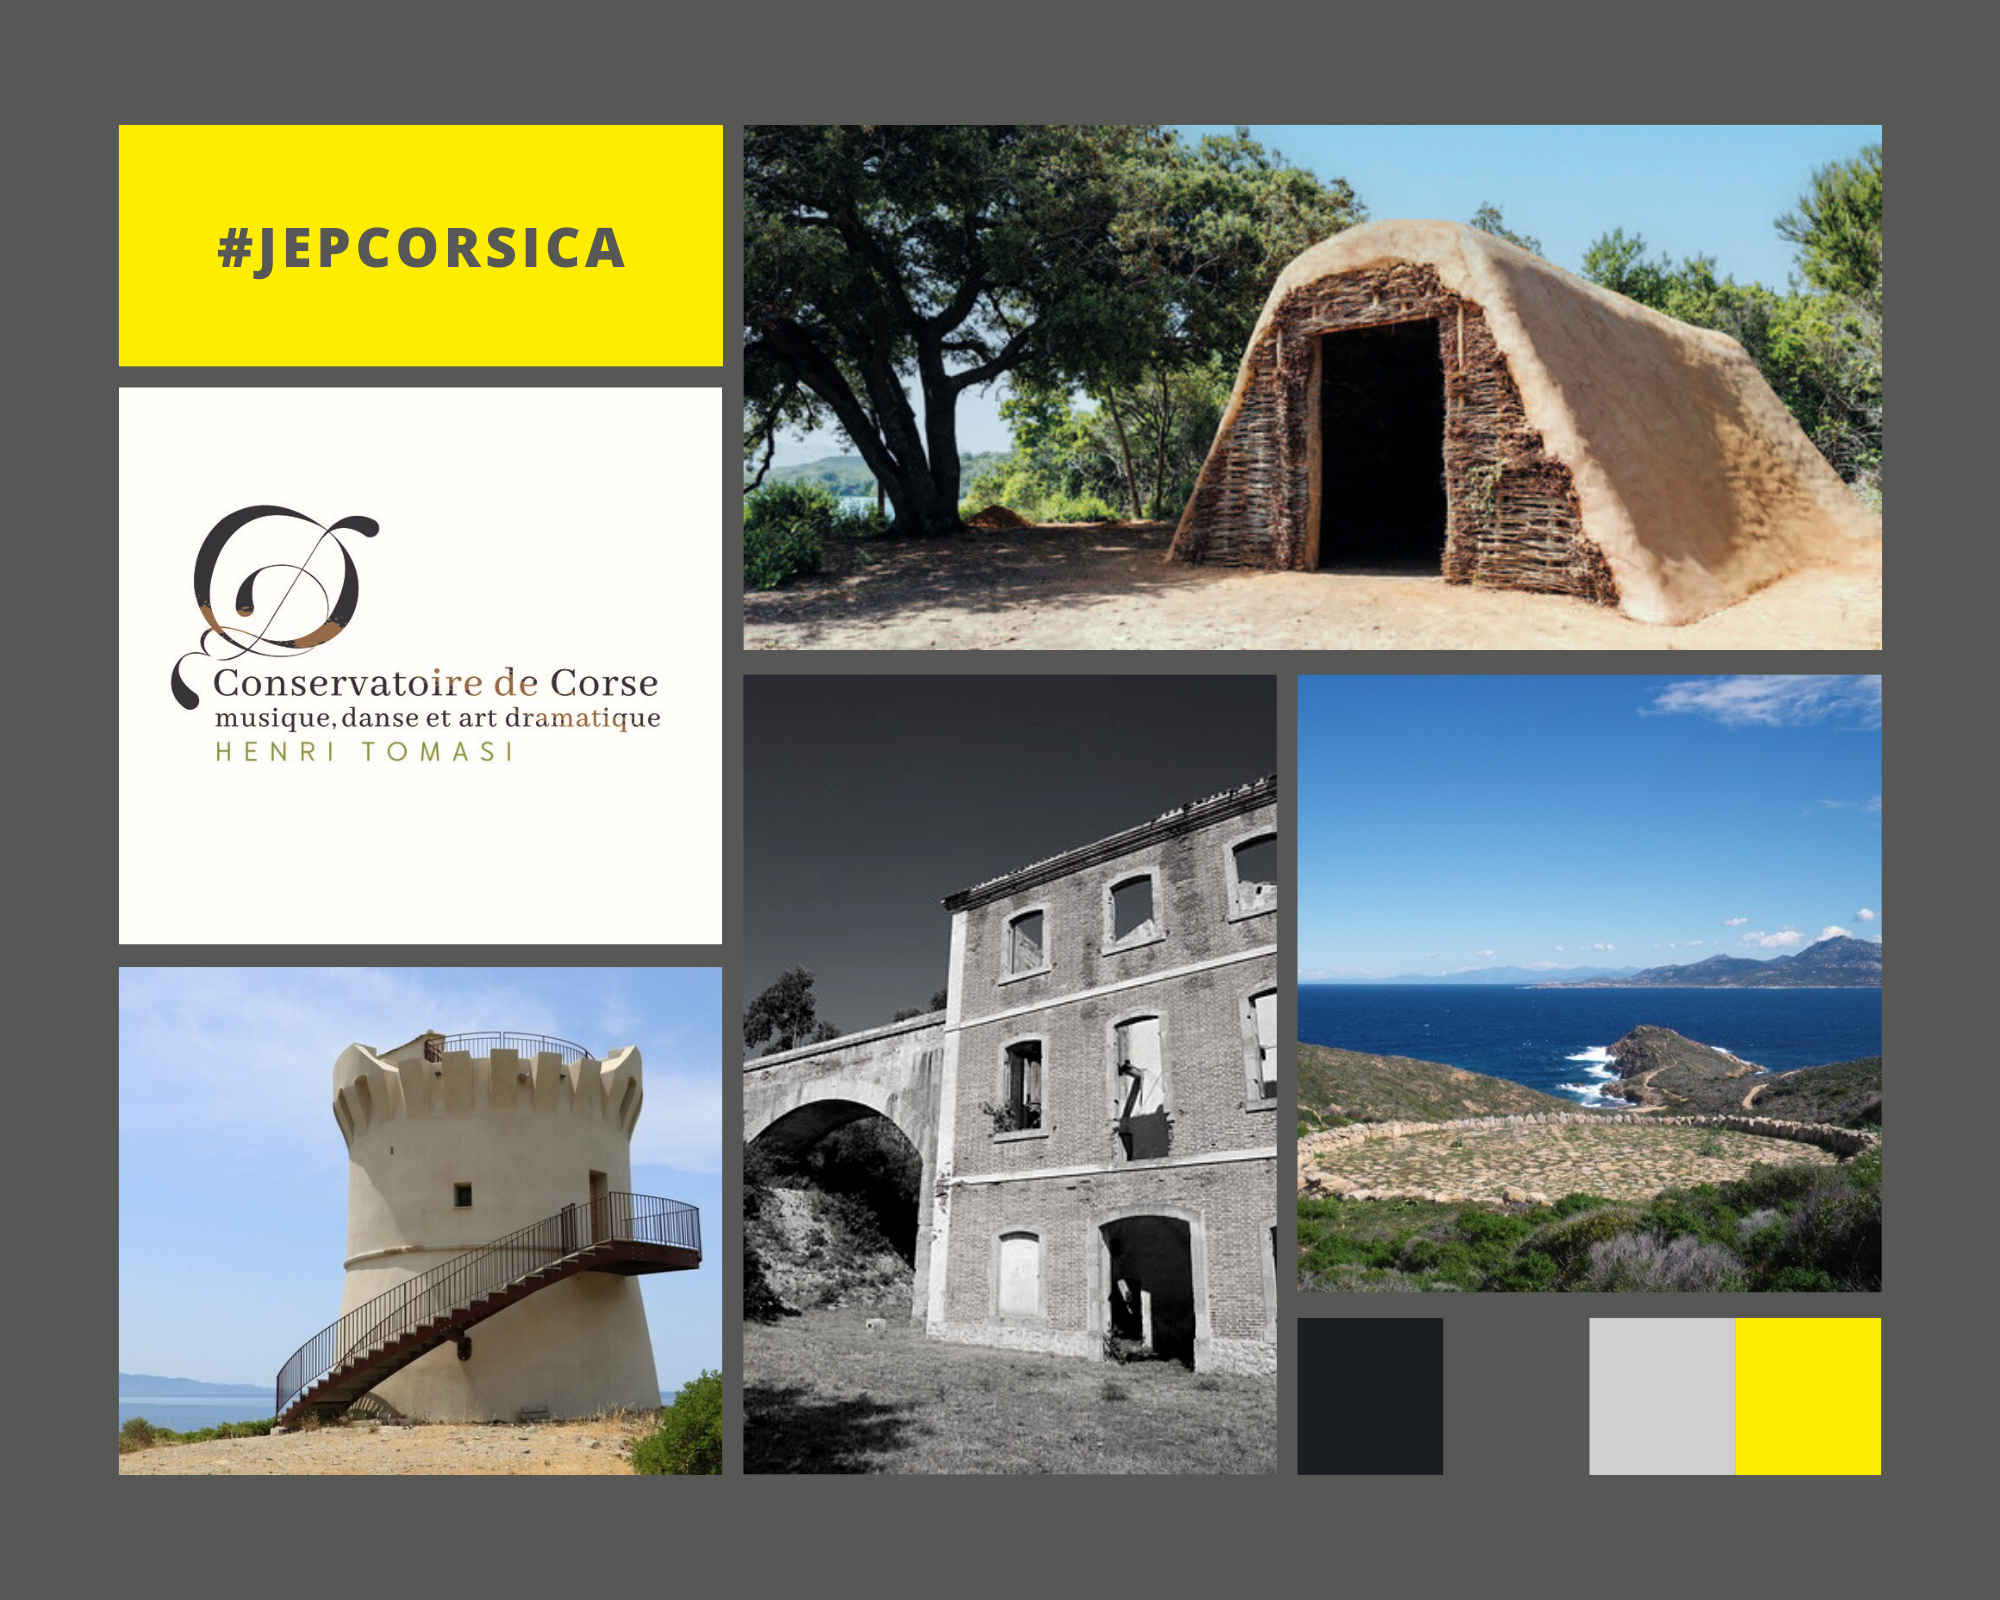 Les Journées européennes du patrimoine 2022 - Programme de la Collectivité de Corse